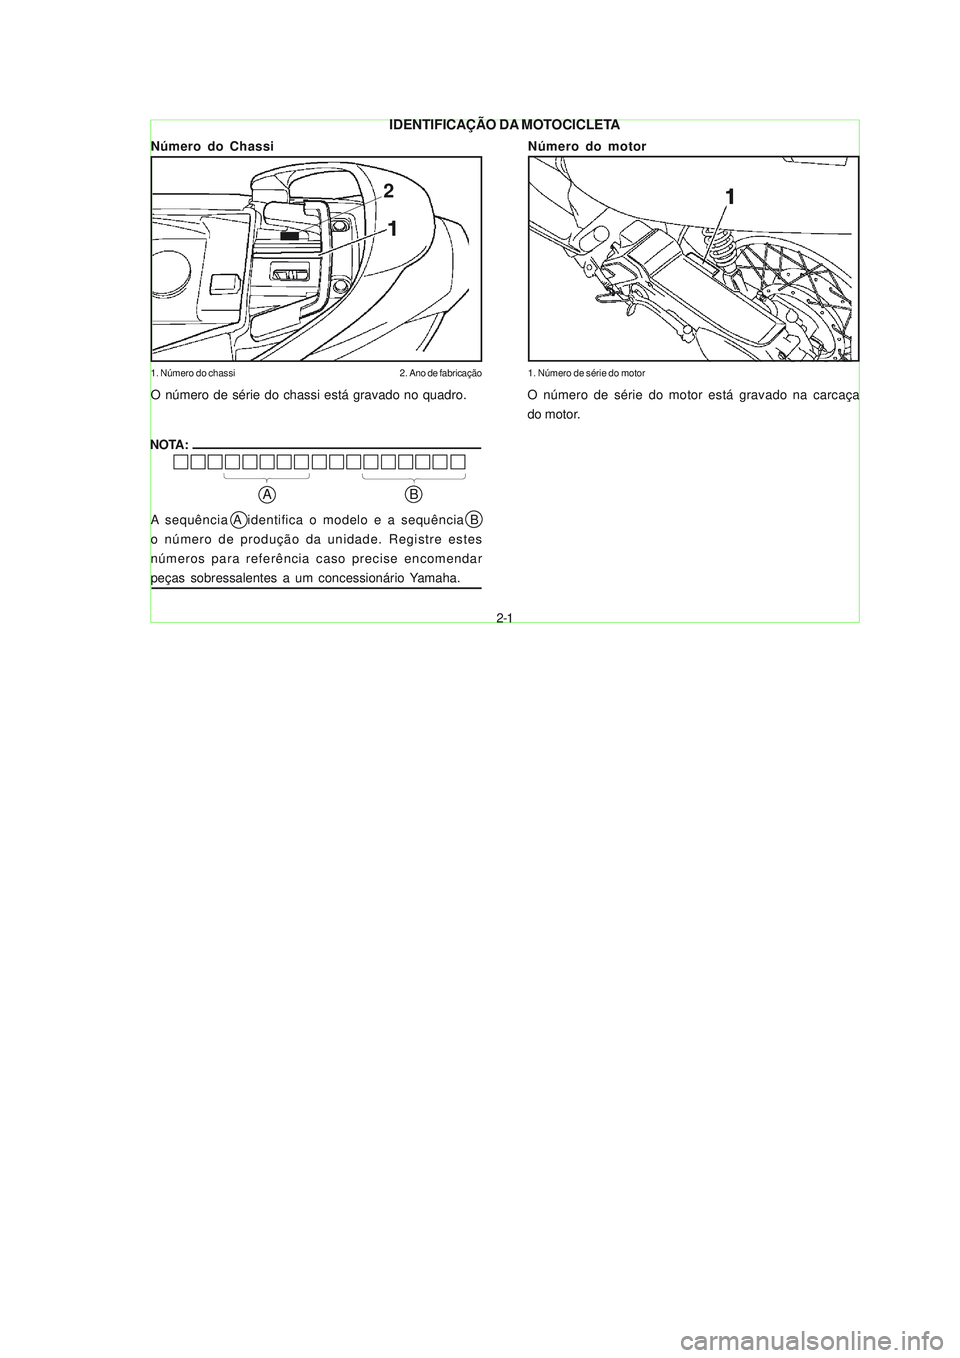 YAMAHA NEO115 2007  Manual de utilização (in Portuguese) 2-1
2-1
Número do Chassi
1. Número do chassi 2. Ano de fabricação
Número do motor
1. Número de série do motor
NOTA:
A sequência A identifica o modelo e a sequência B
o número de produção d